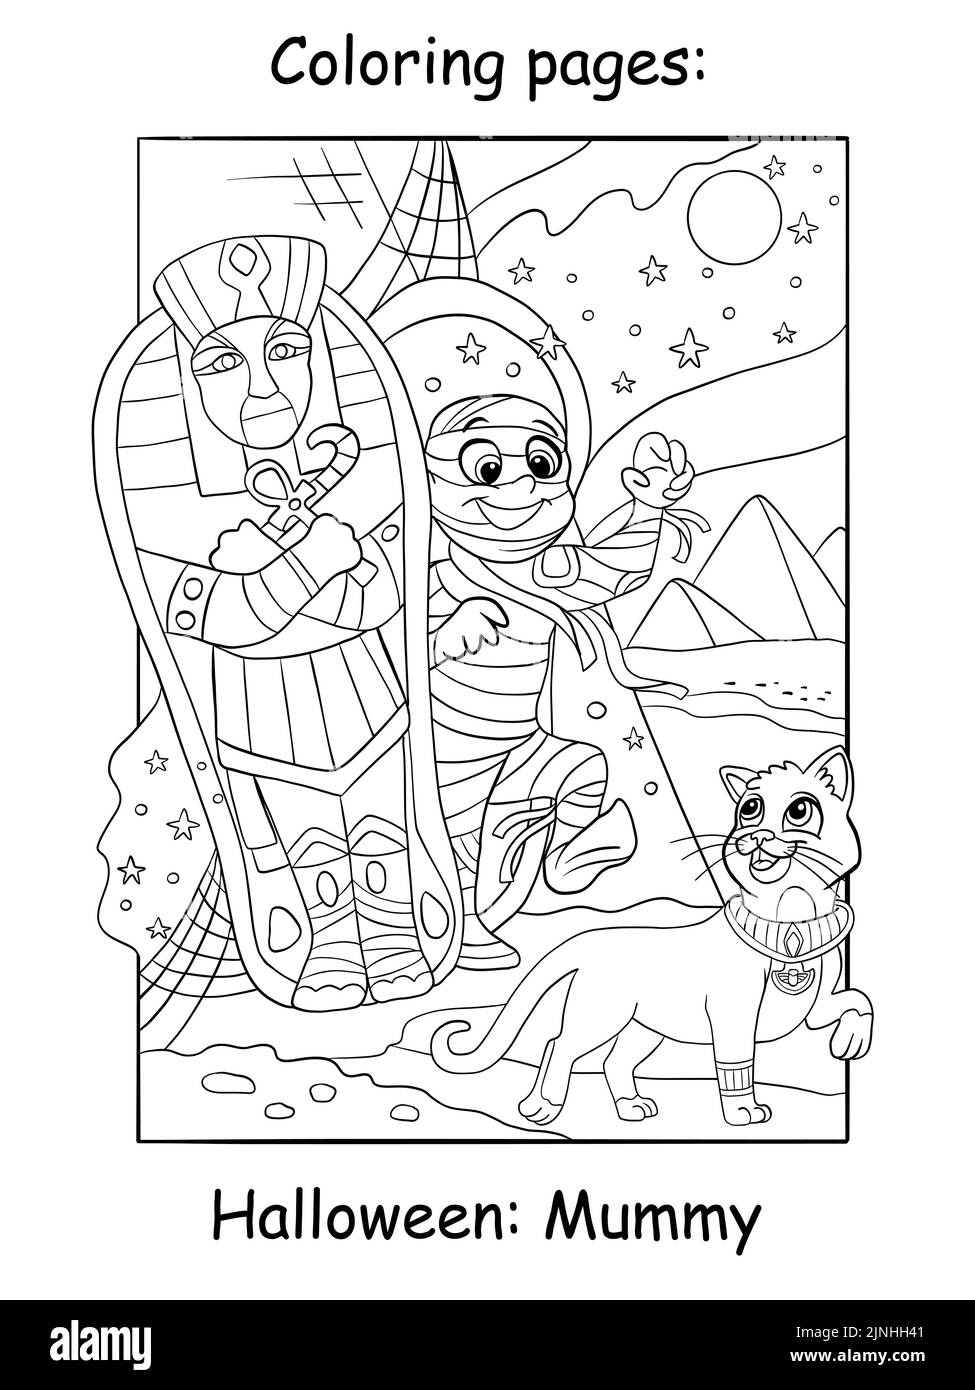 Nette pharaoh Mama und ägyptische Katze. Halloween-Konzept. Zum ausmalen für Kinder. Vektorgrafik Cartoon-Illustration. Für Druck, Dekor, Bildung und Stock Vektor